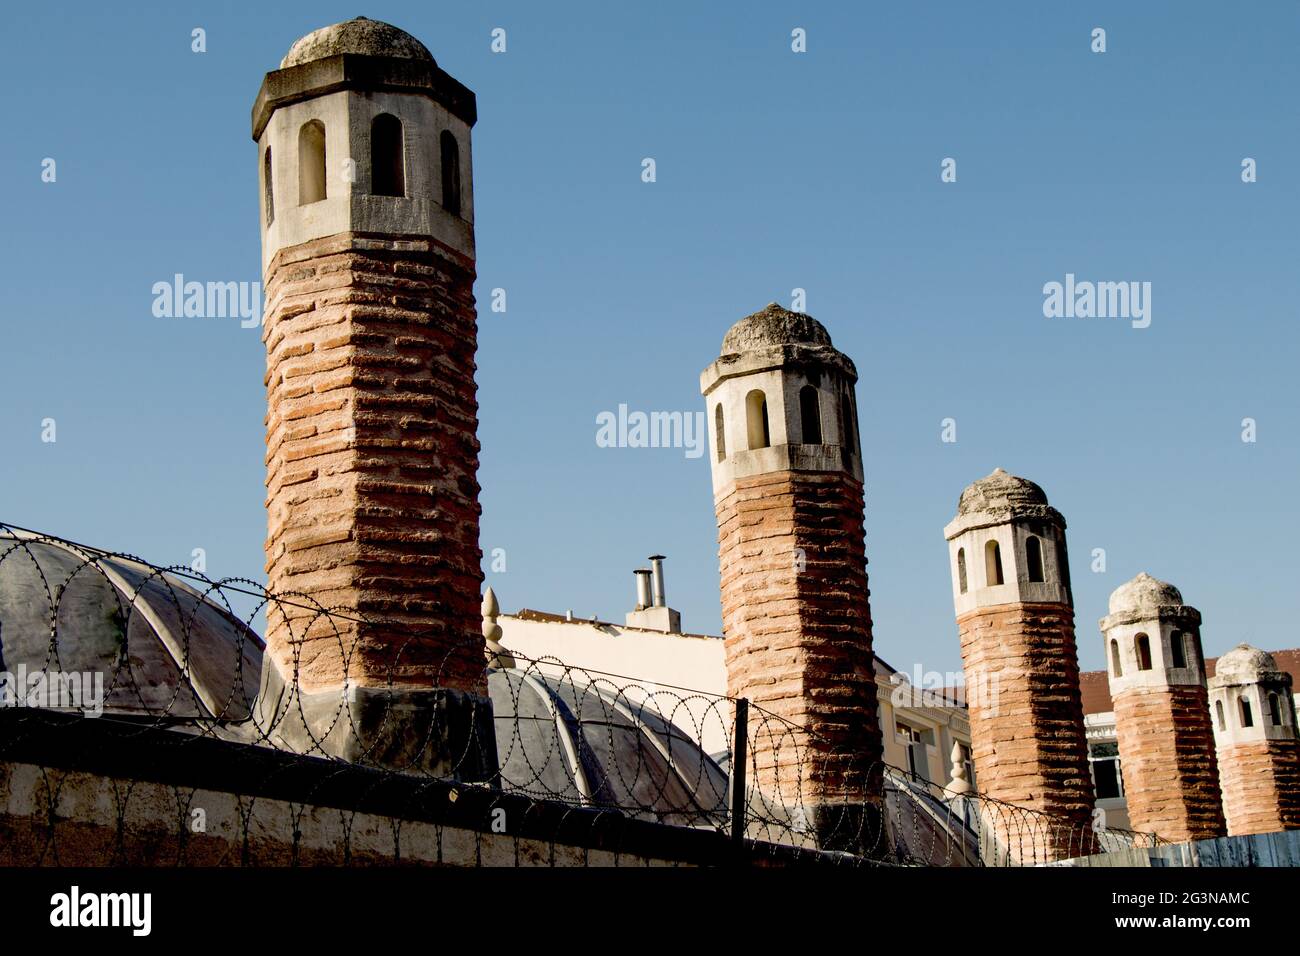 Exemple de toit d'architecture turque ottomane Banque D'Images